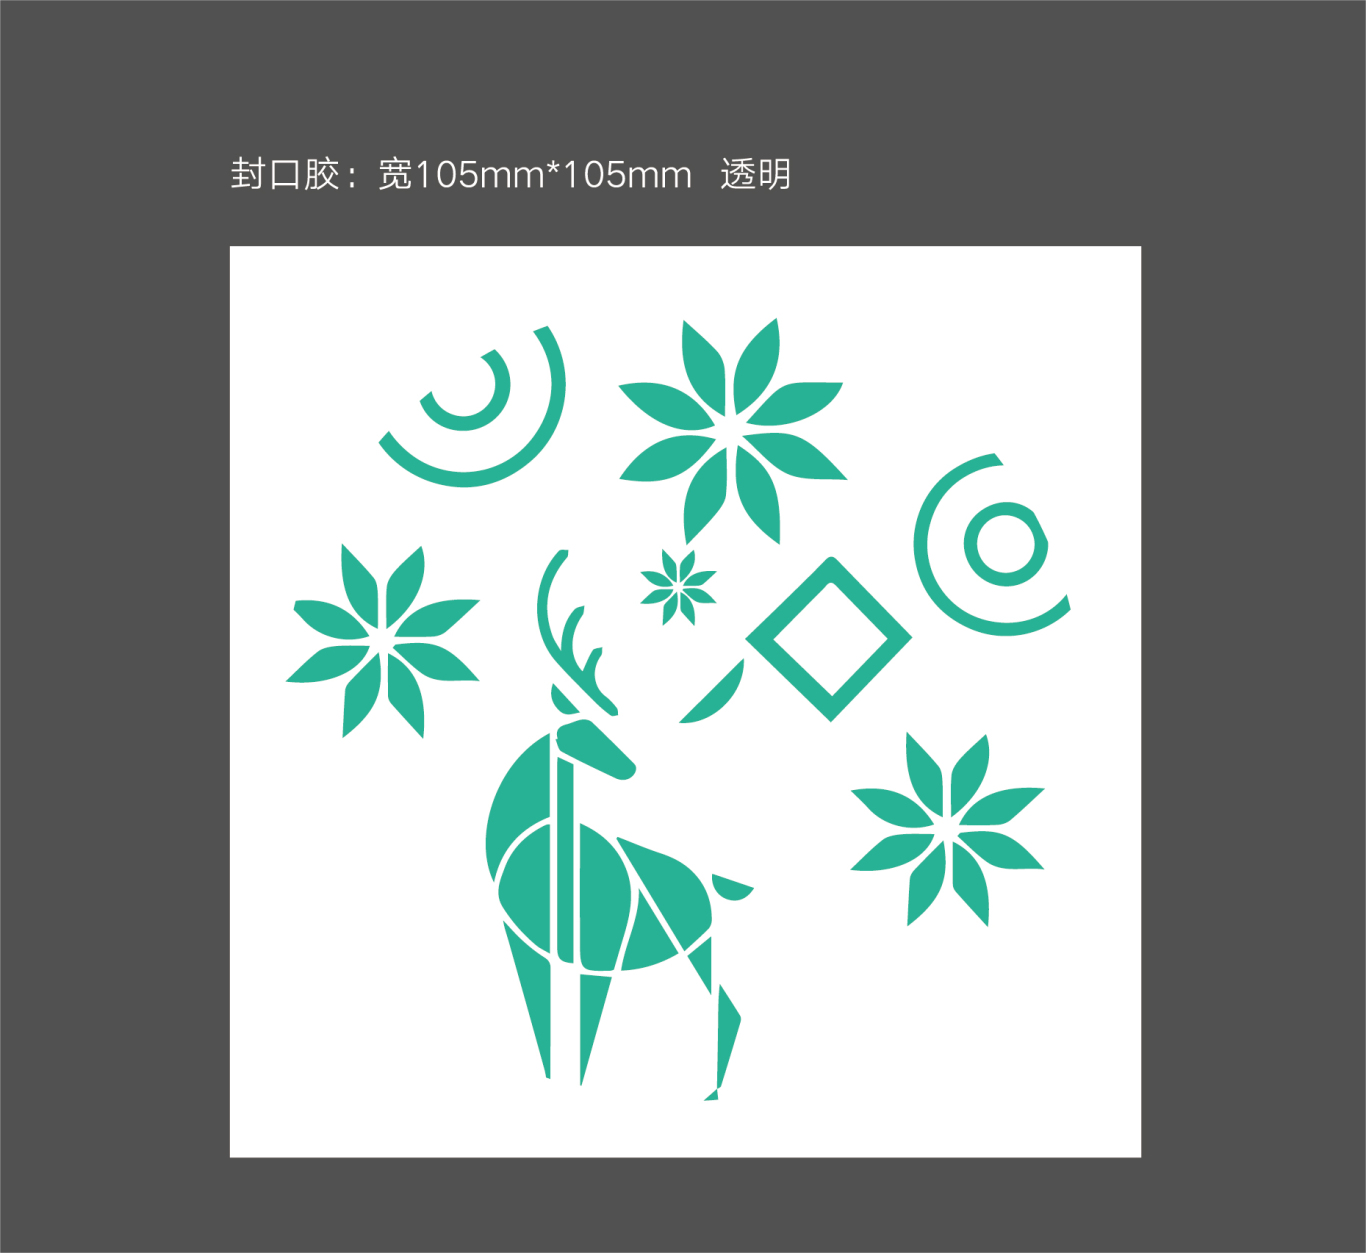 清舞飘雪茶饮 logo设计及吉祥物设计图14